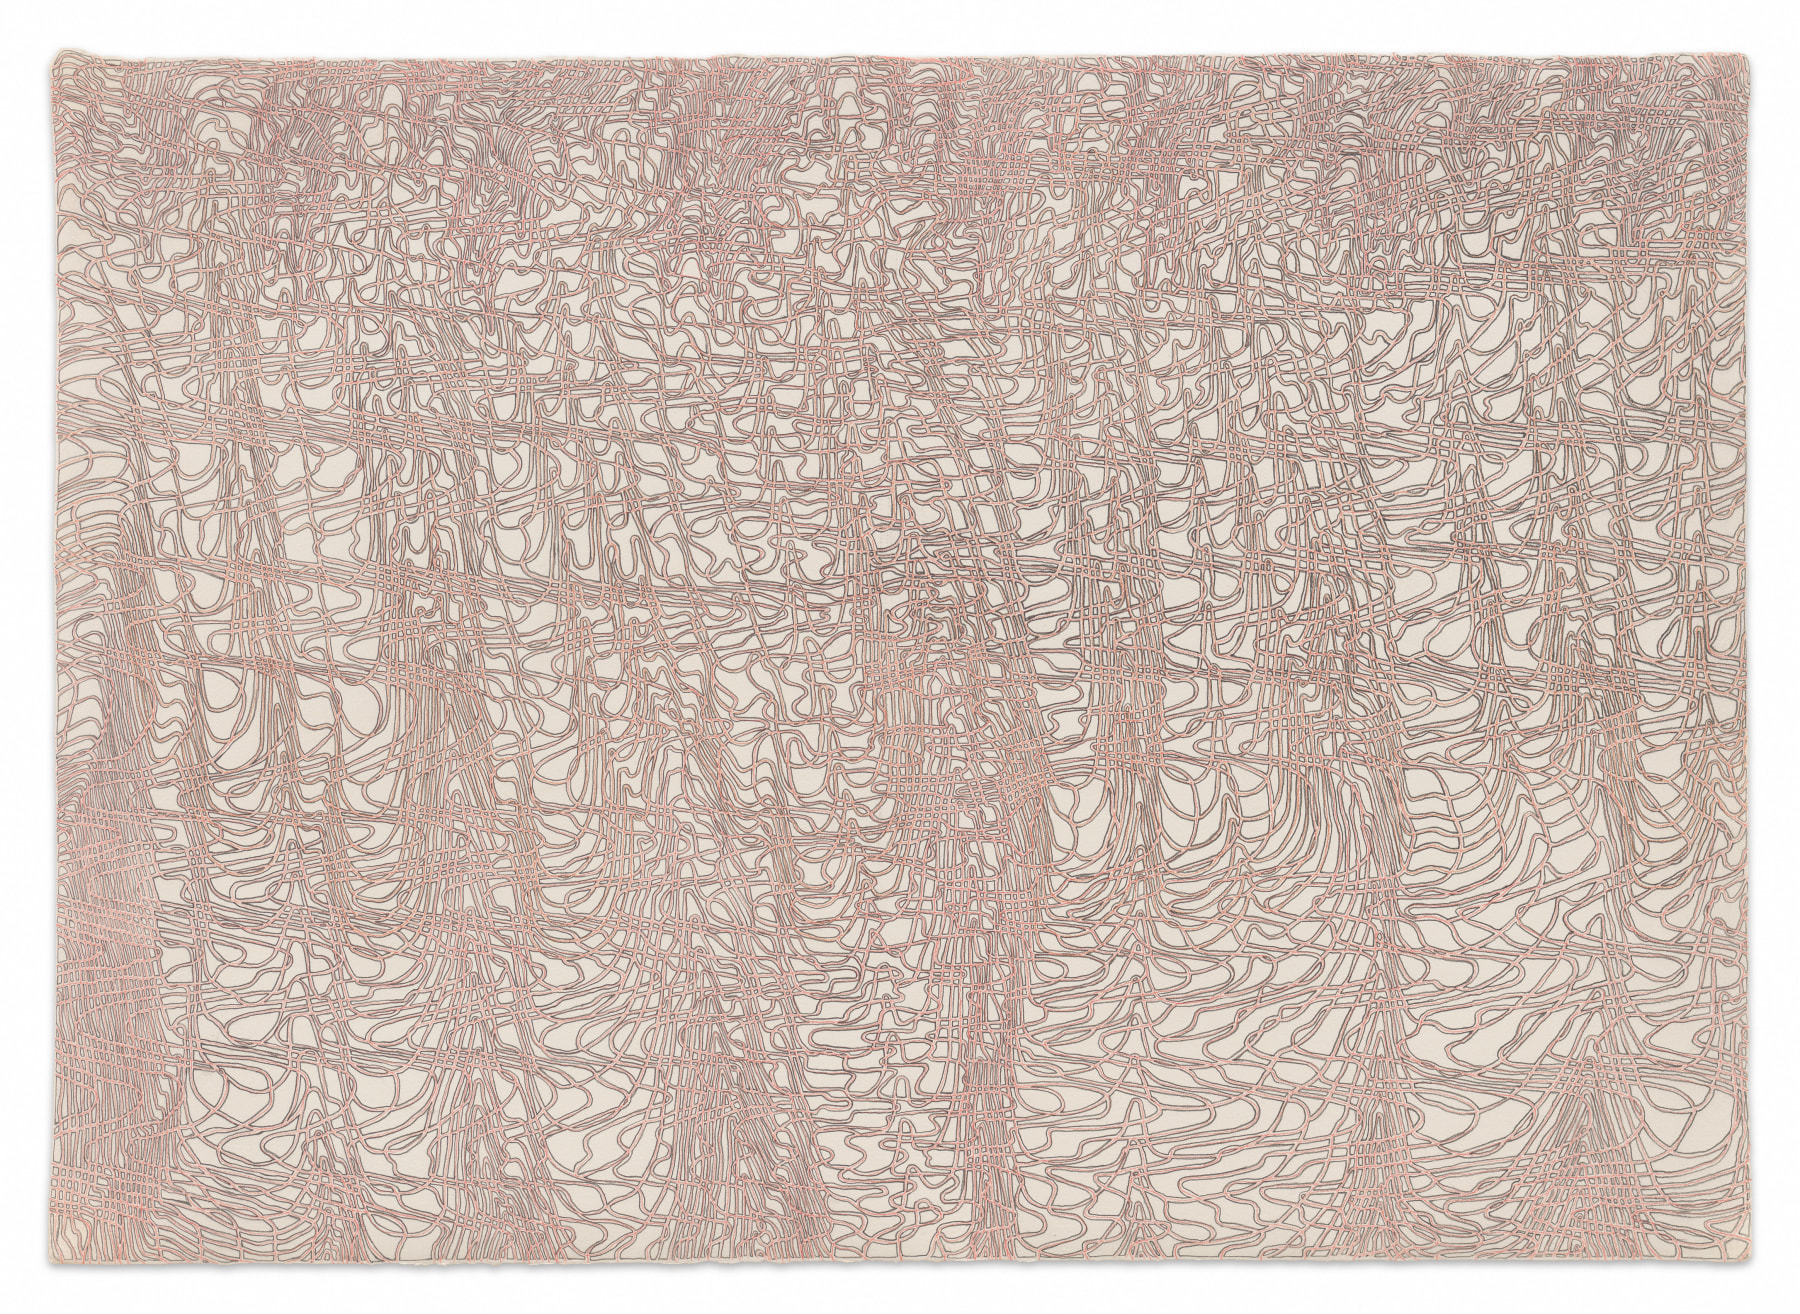 Spoolstrata, 2023, Graphite on paper, 22 3/8 x 31 1/16 inches, 56.8 x 78.9 cm